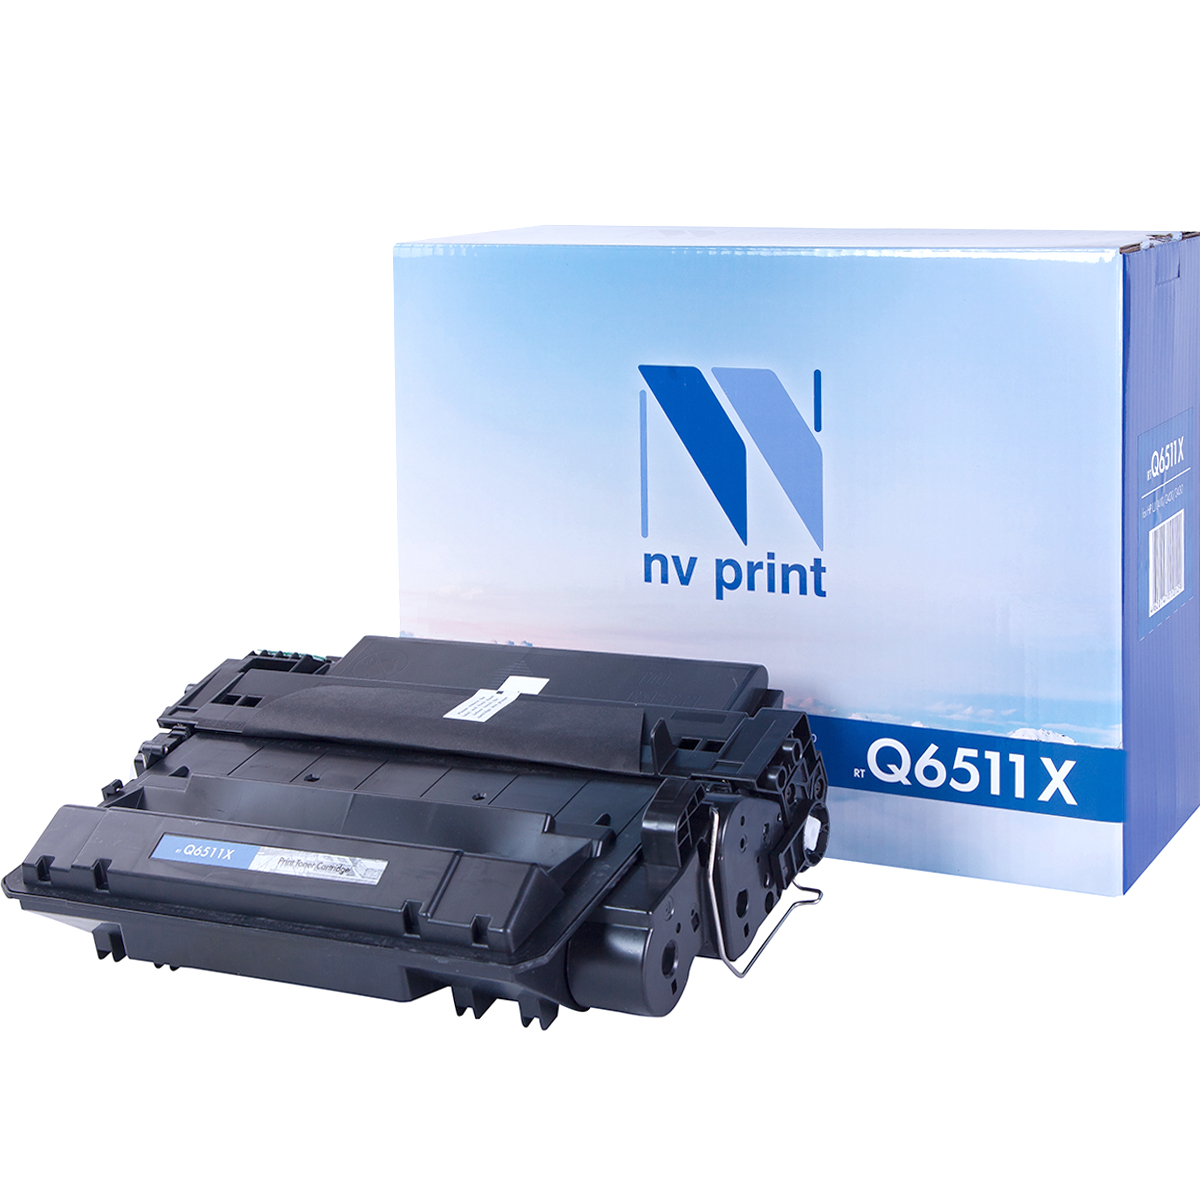  NV Print NV-Q6511X